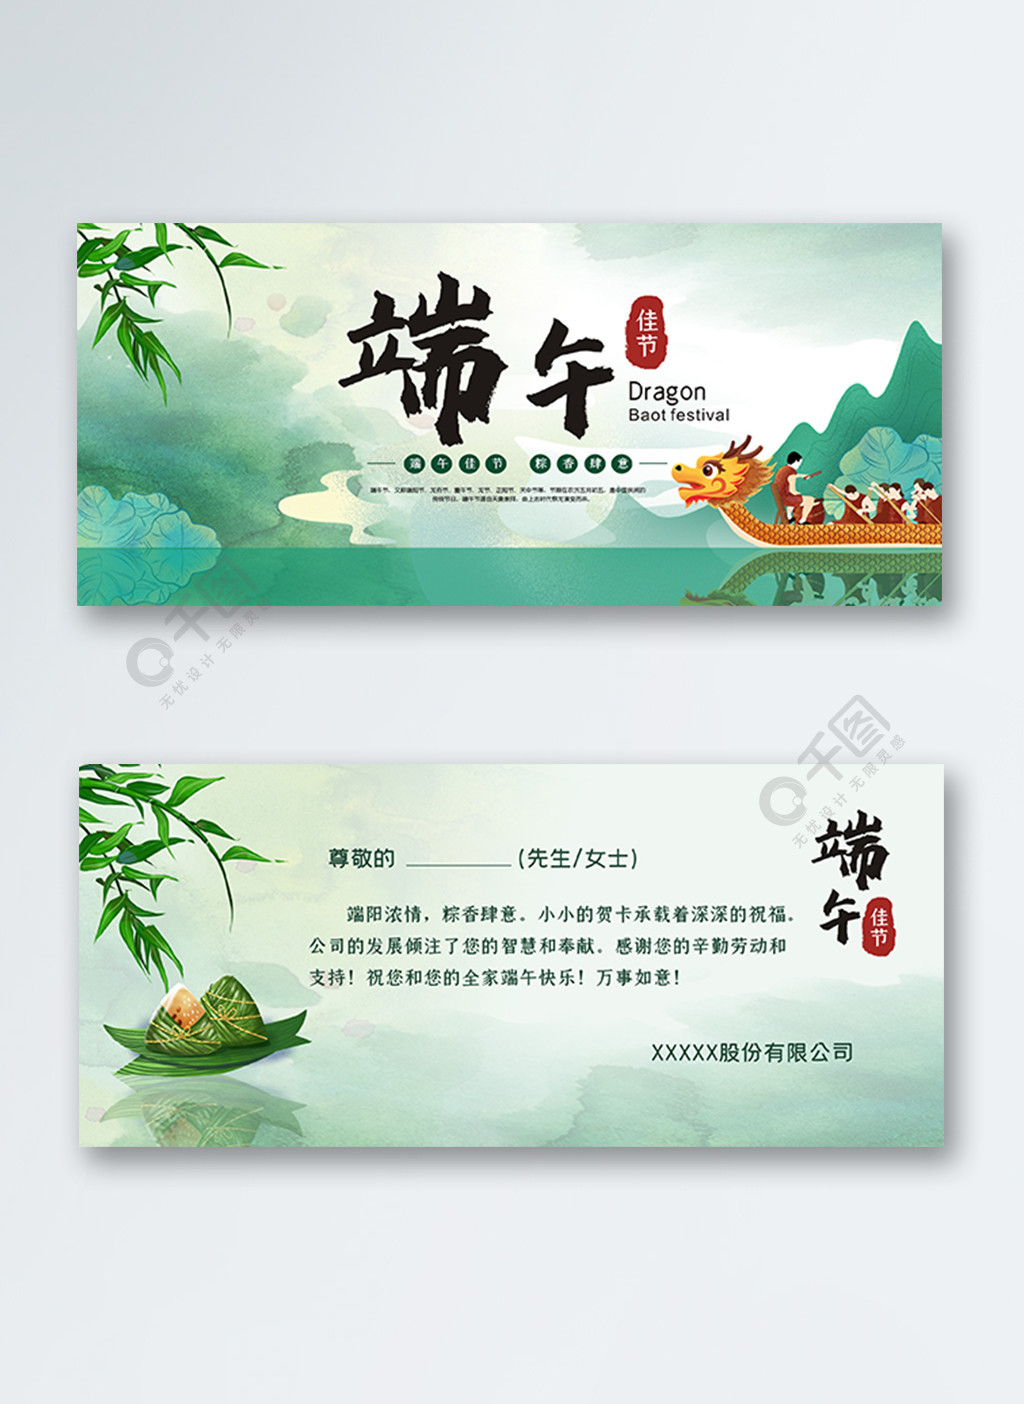 原创矢量中国风端午节节日祝福贺卡设计